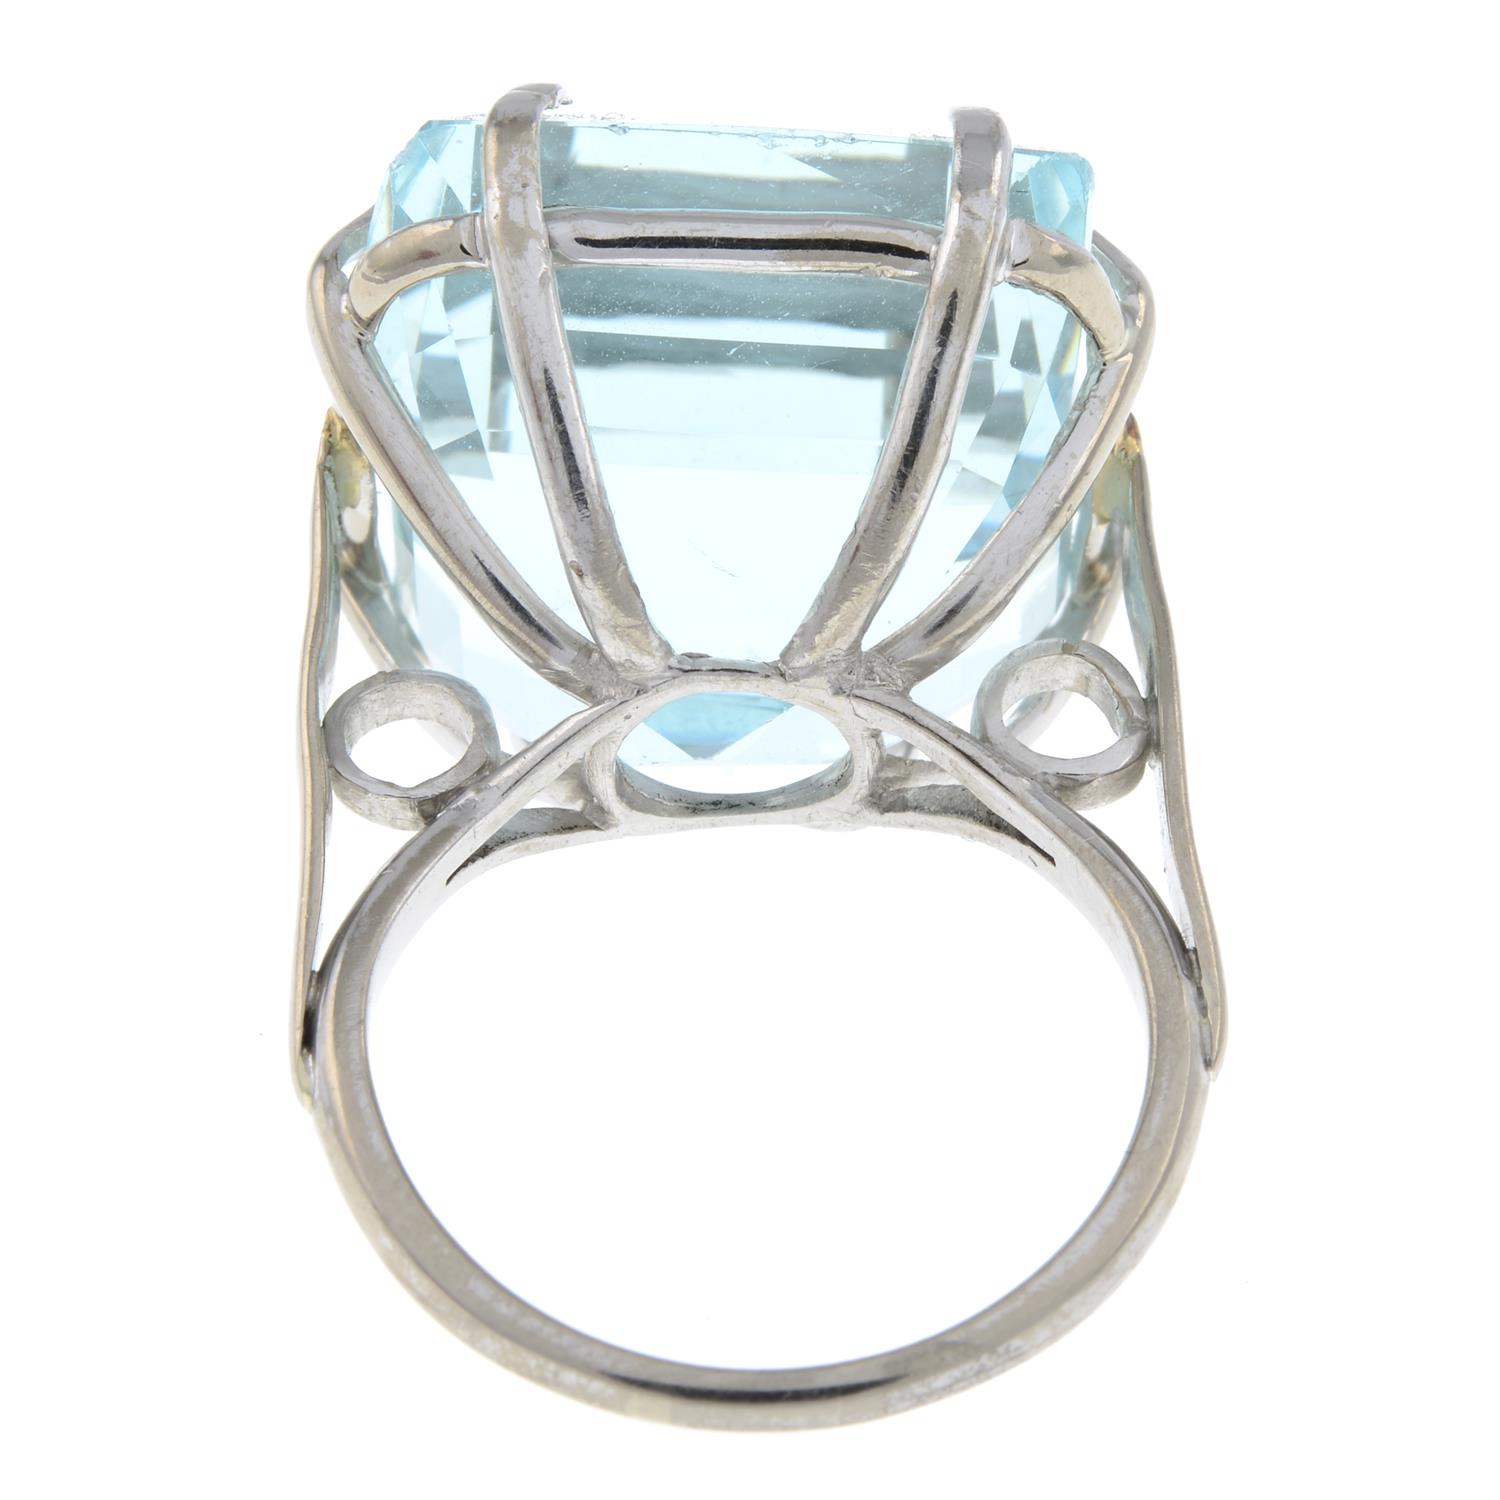 Aquamarine ring - Image 2 of 4